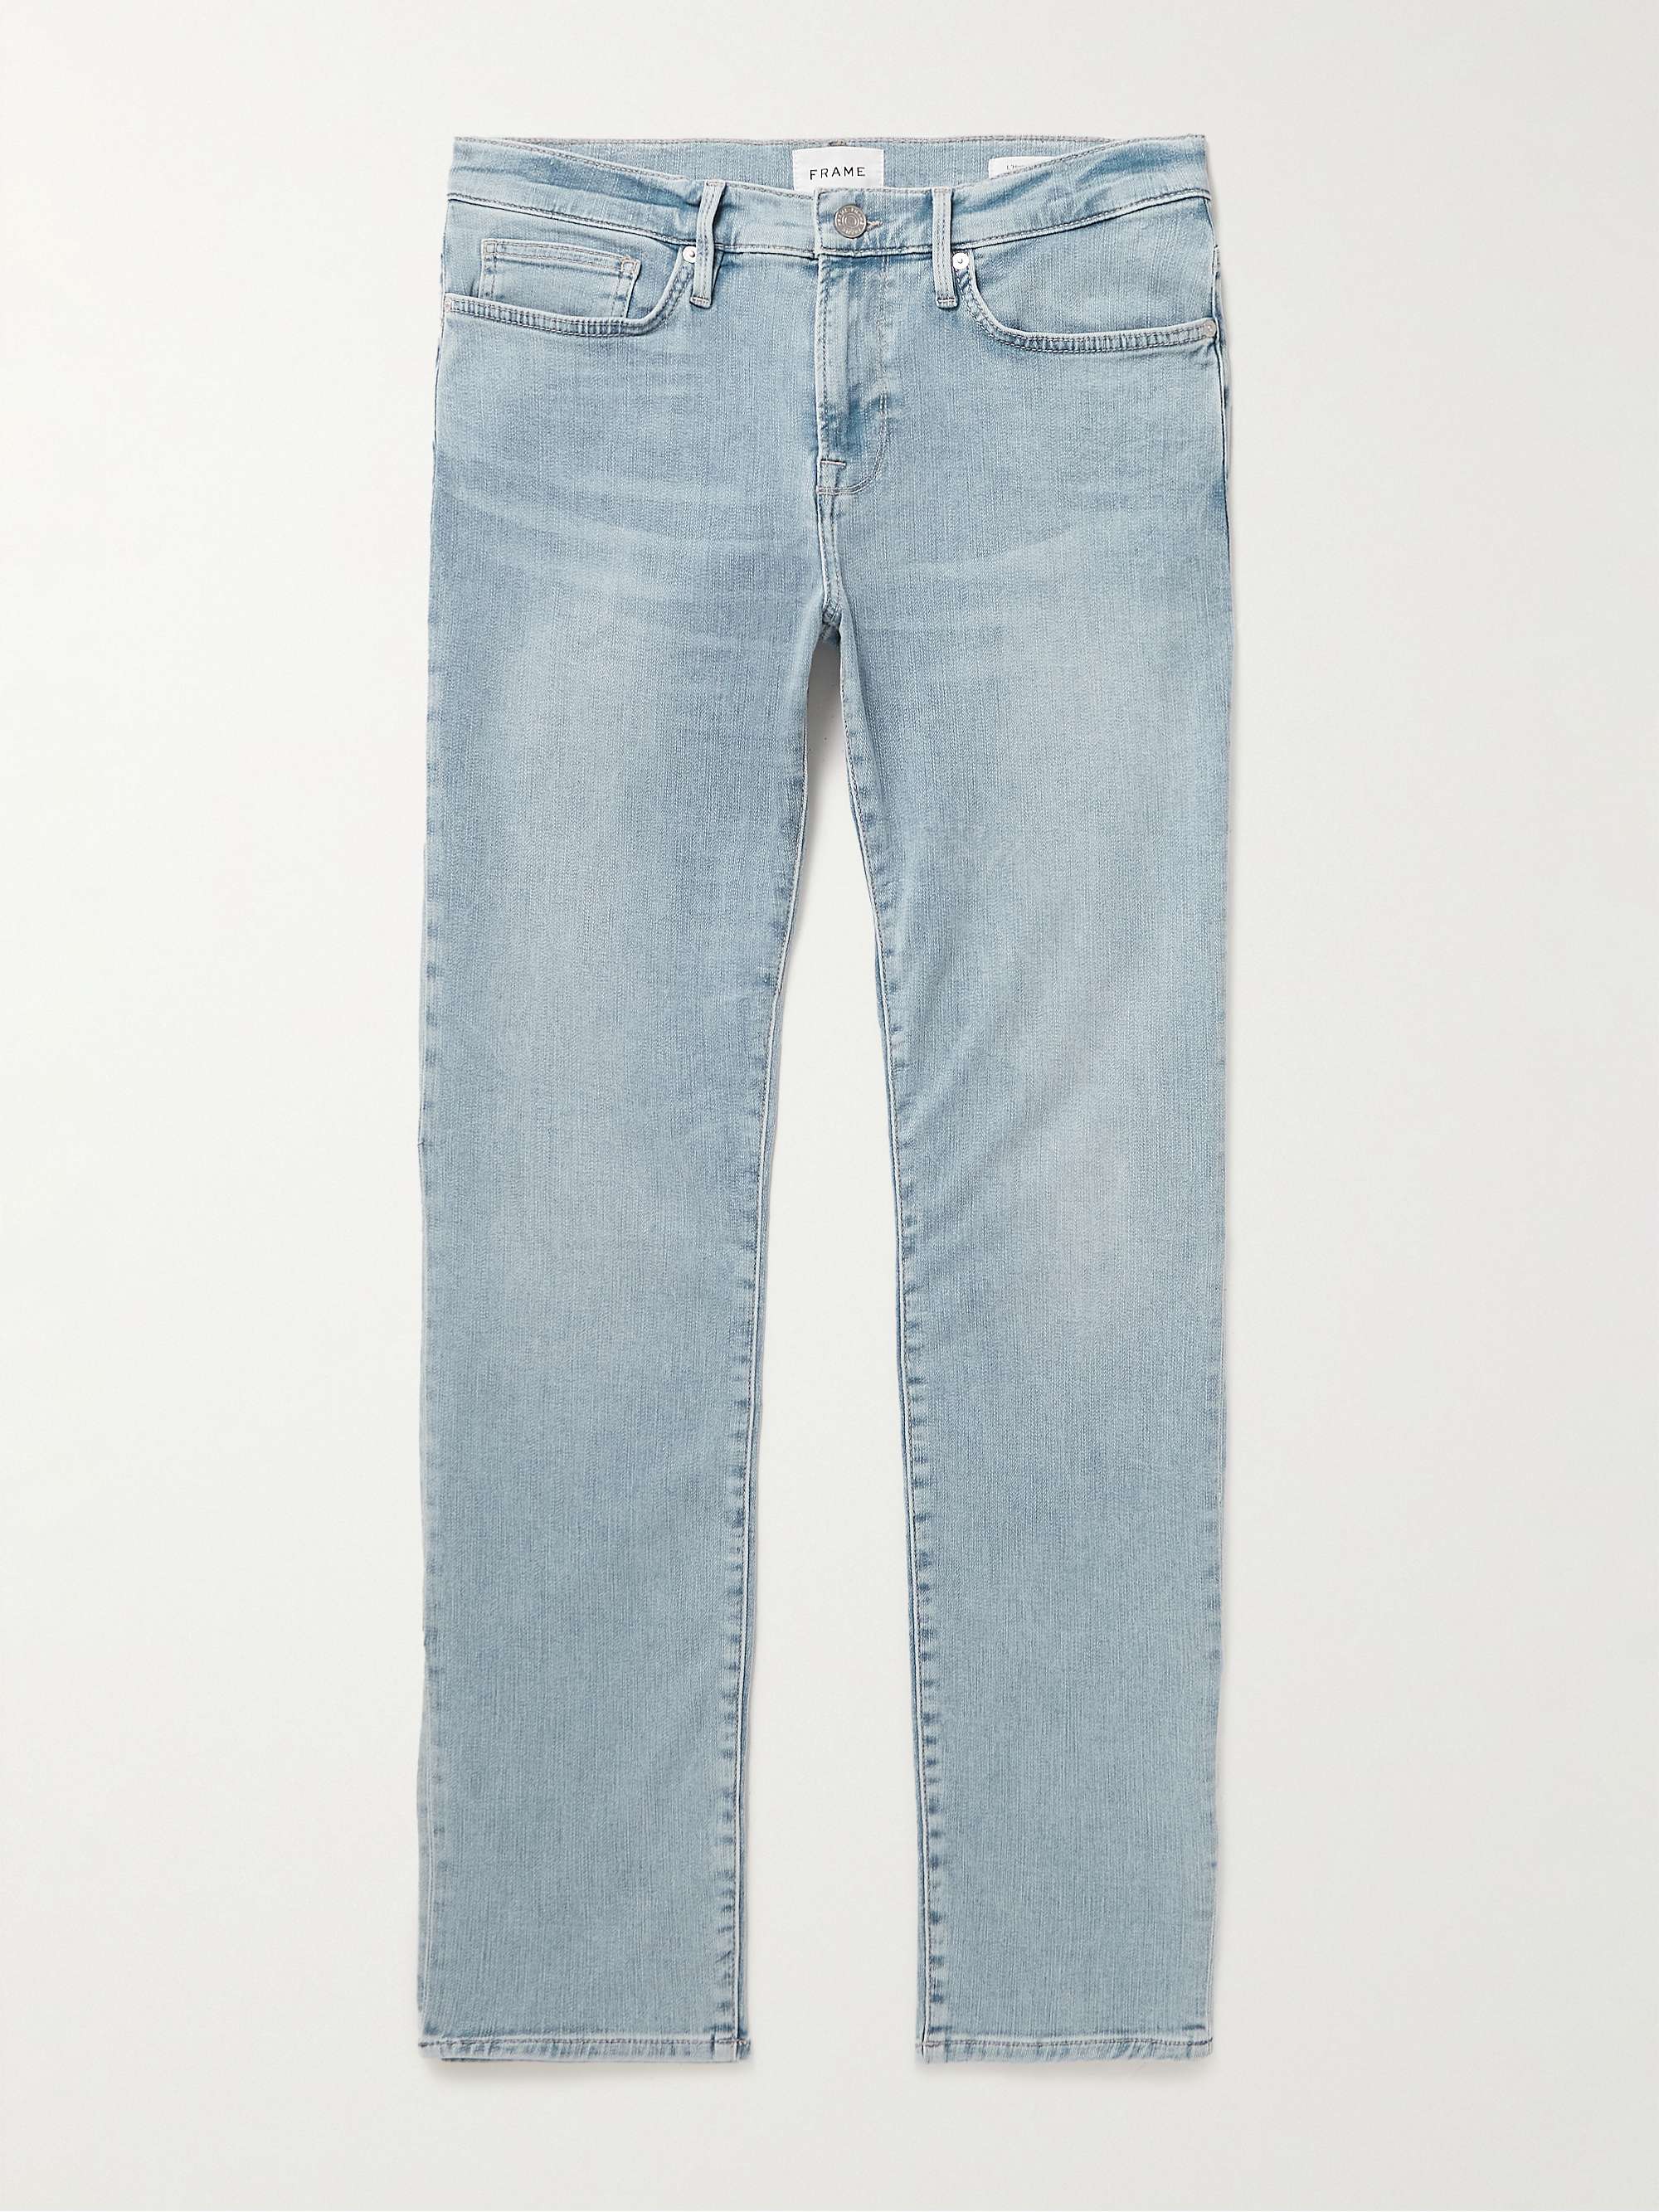 FRAME L'Homme Skinny-Fit Jeans for Men | MR PORTER